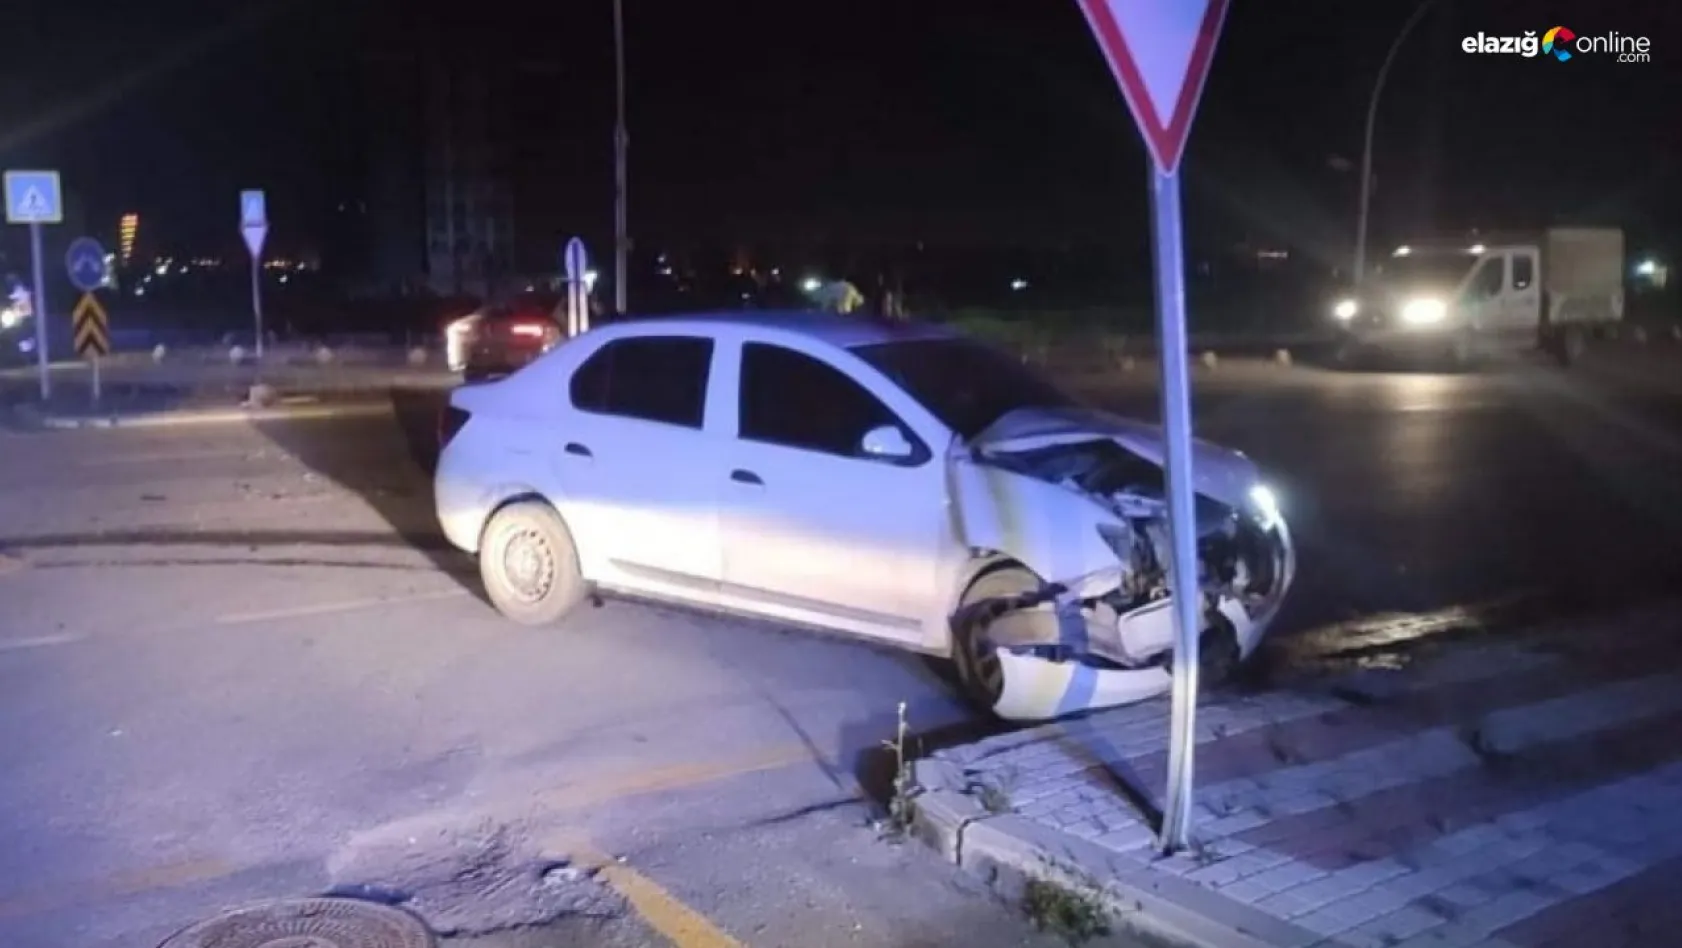 Malatya'da iki araç çarpıştı: 5 yaralı